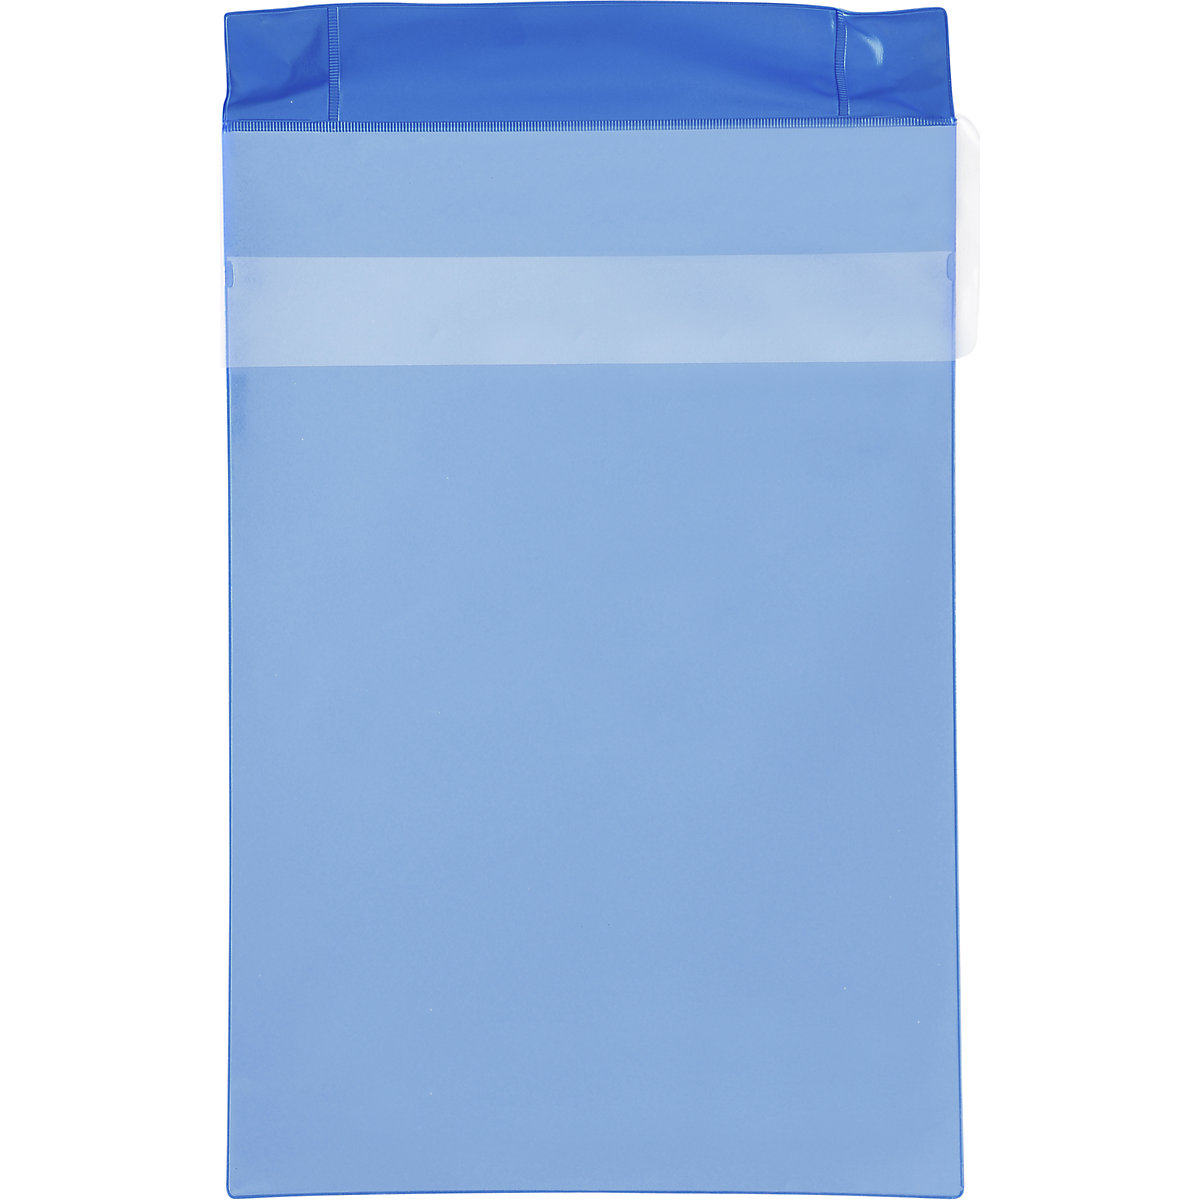 Magnetni džepovi od neodimija, uspravni format, s pokrovom za zaštitu od kiše, pak. 25 kom., u plavoj boji, DIN A4, od 1 pak.-6